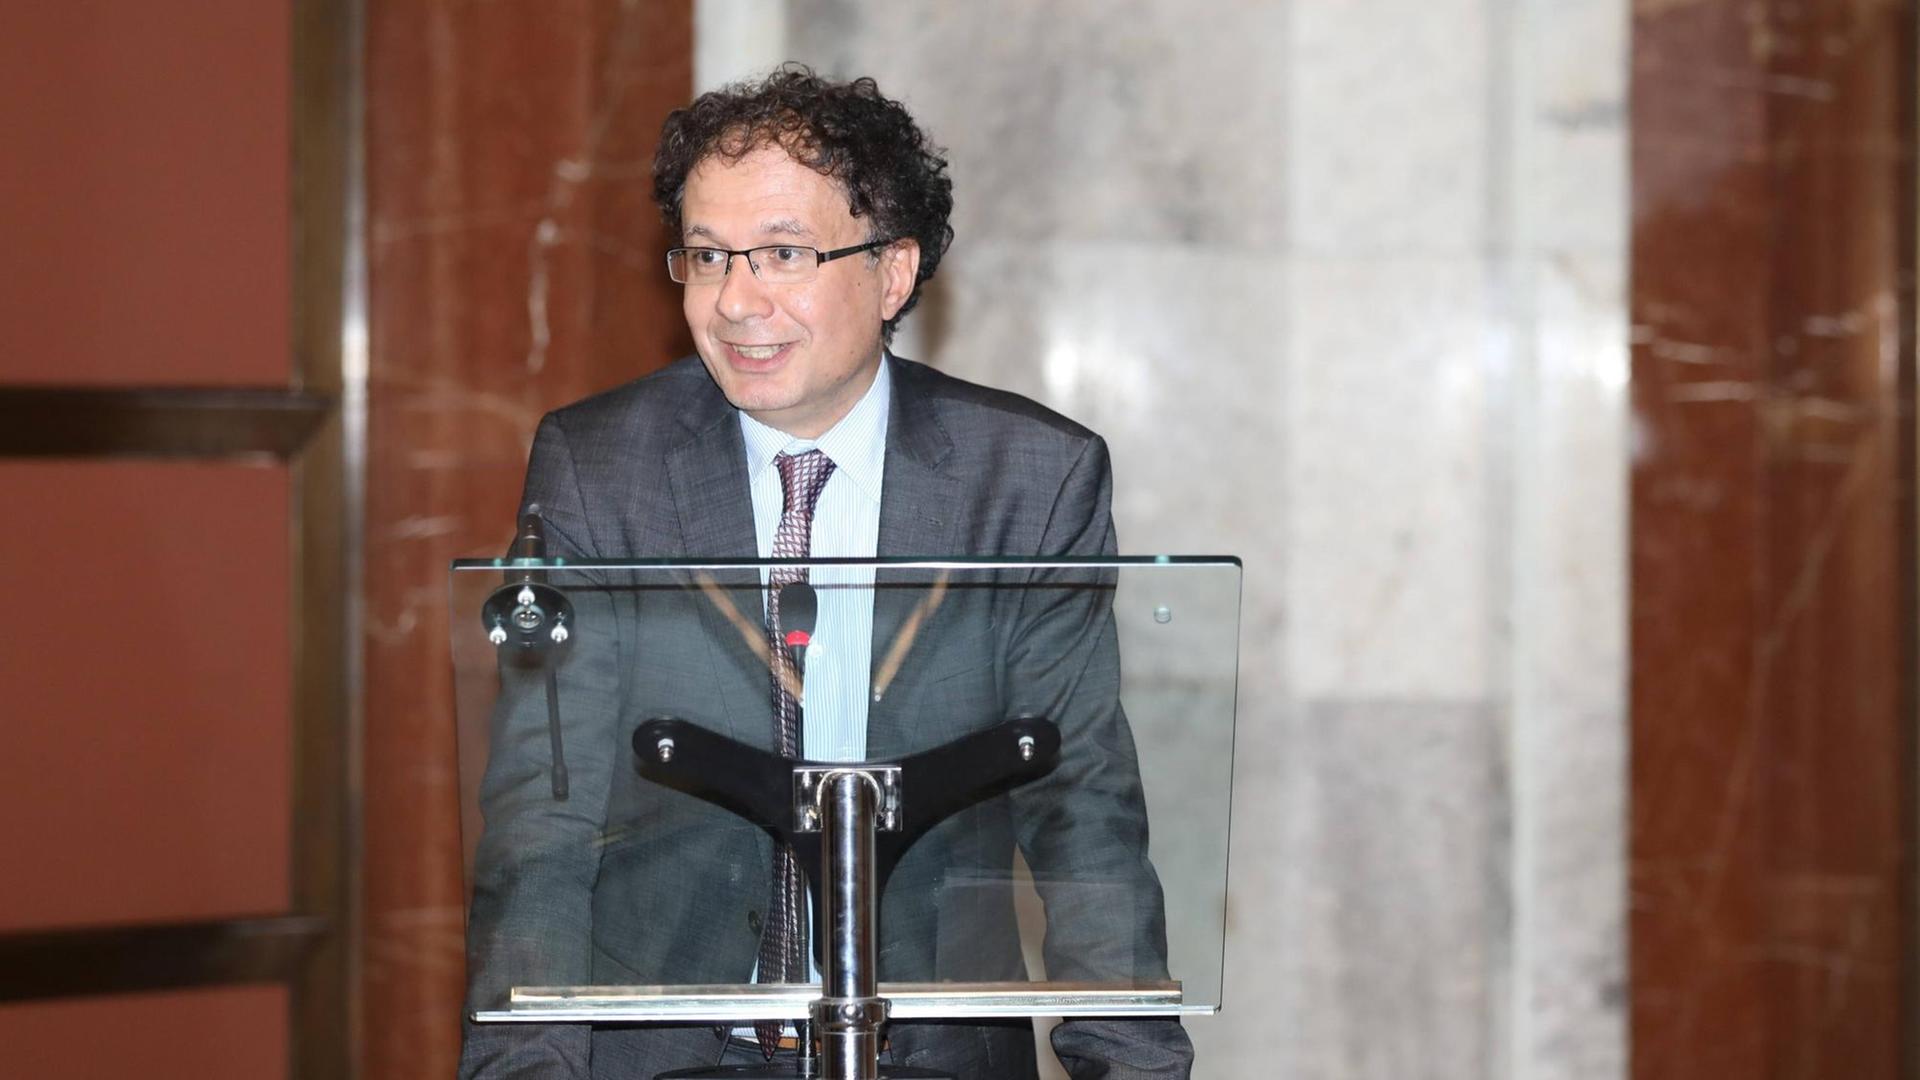 Michele Geraci, Staatssekretär im Wirtschaftsministerium Italiens hält eine Rede am 1. Oktober 2019 in Rom auf einem Treffen der neu gegründeten "China Task Force".